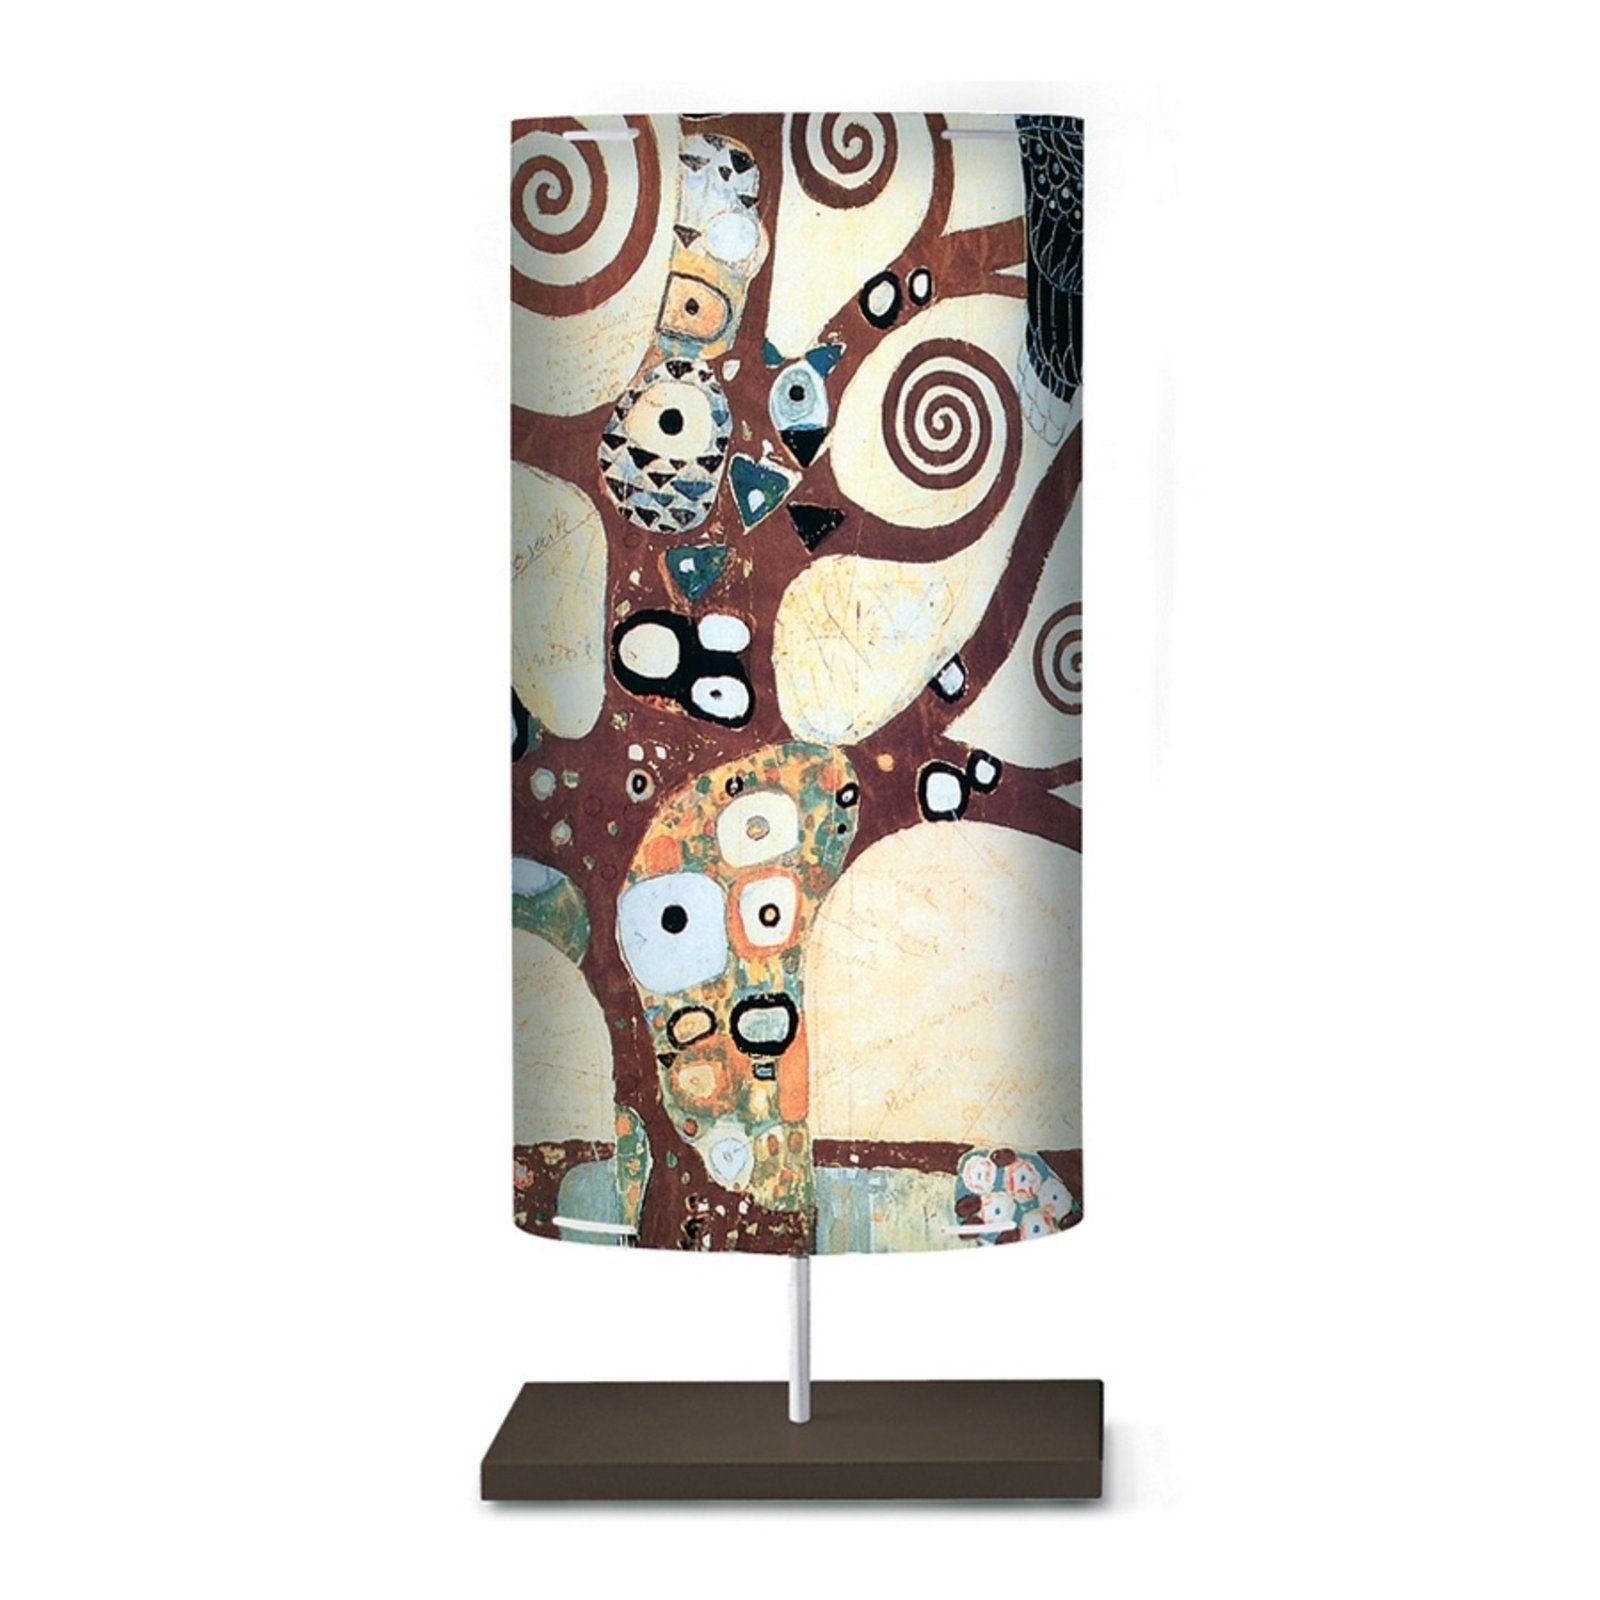 Stålampen Klimt I med kunstmotiv